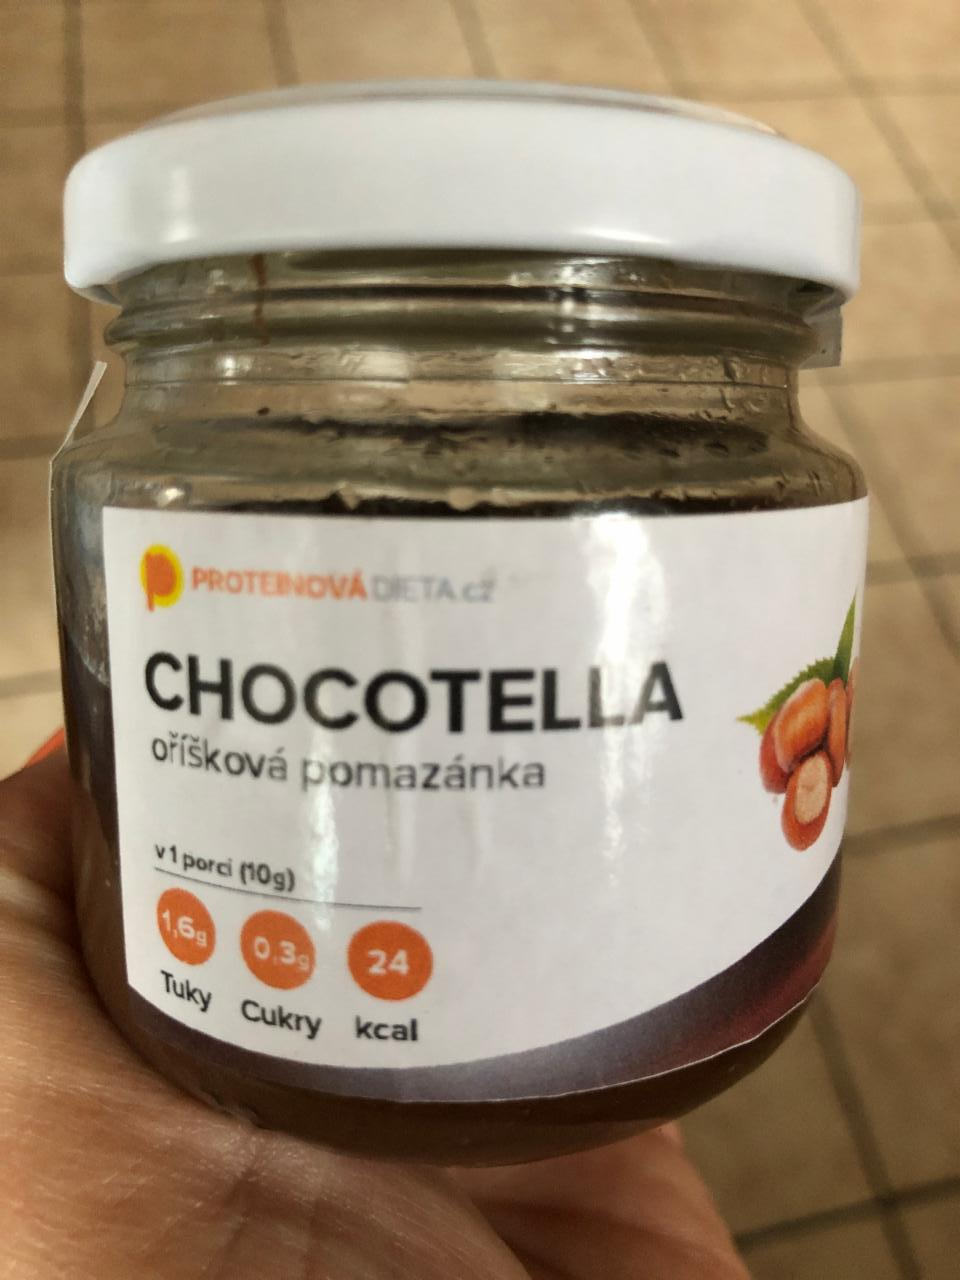 Fotografie - Chocotella Proteinovádieta.cz